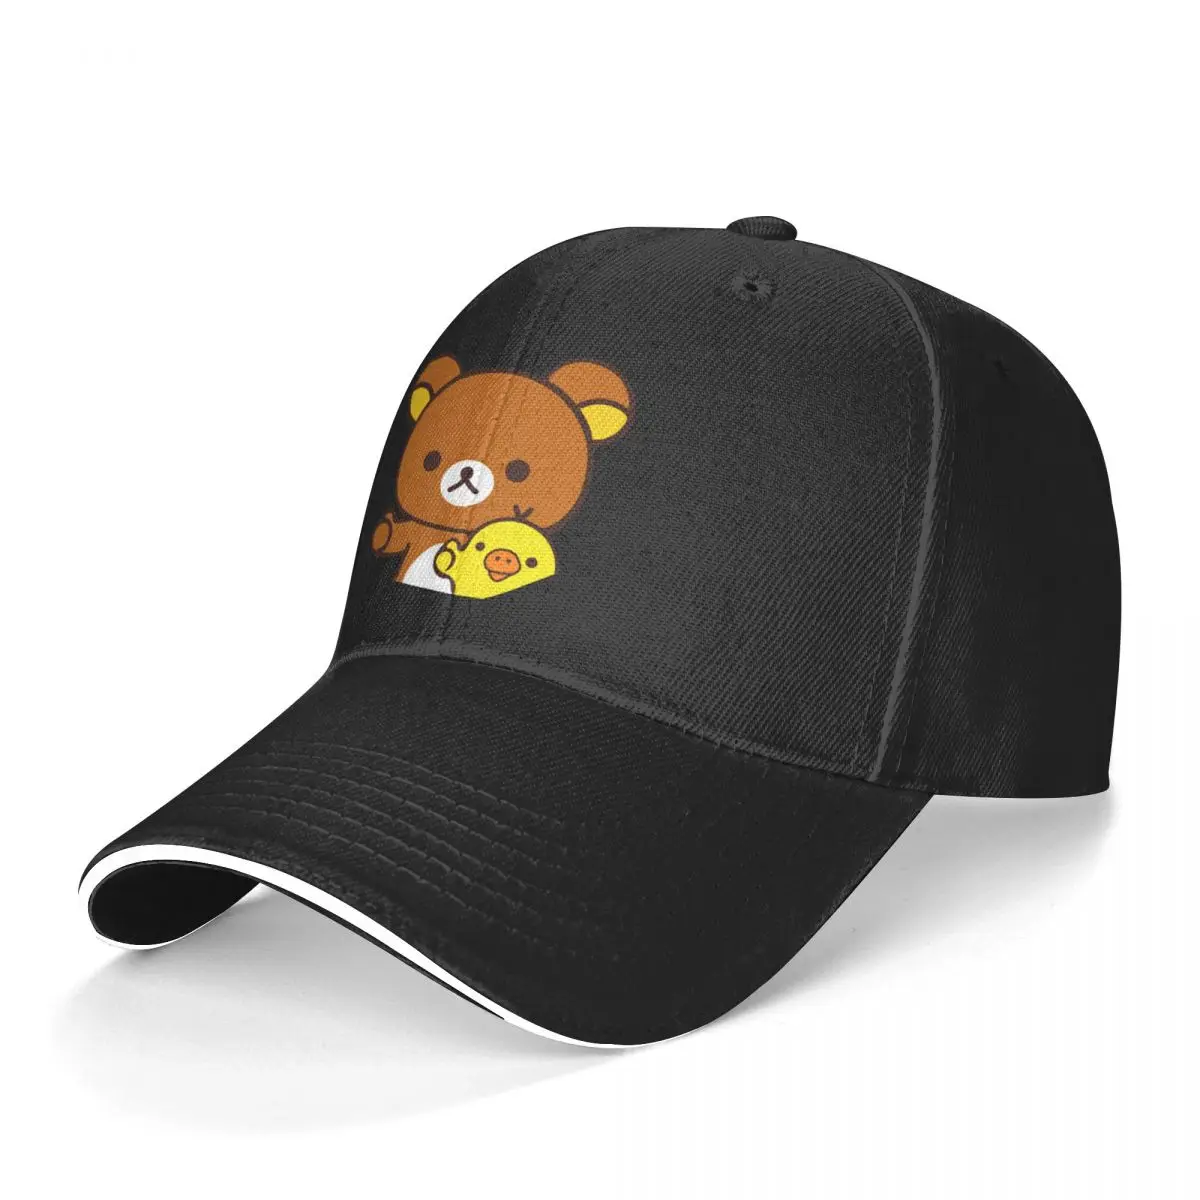 Rilakkuma Baseball Cap Rilakkuma Aesthetic Man Trucker Hat Print Kpop Snapback Cap Birthday Present